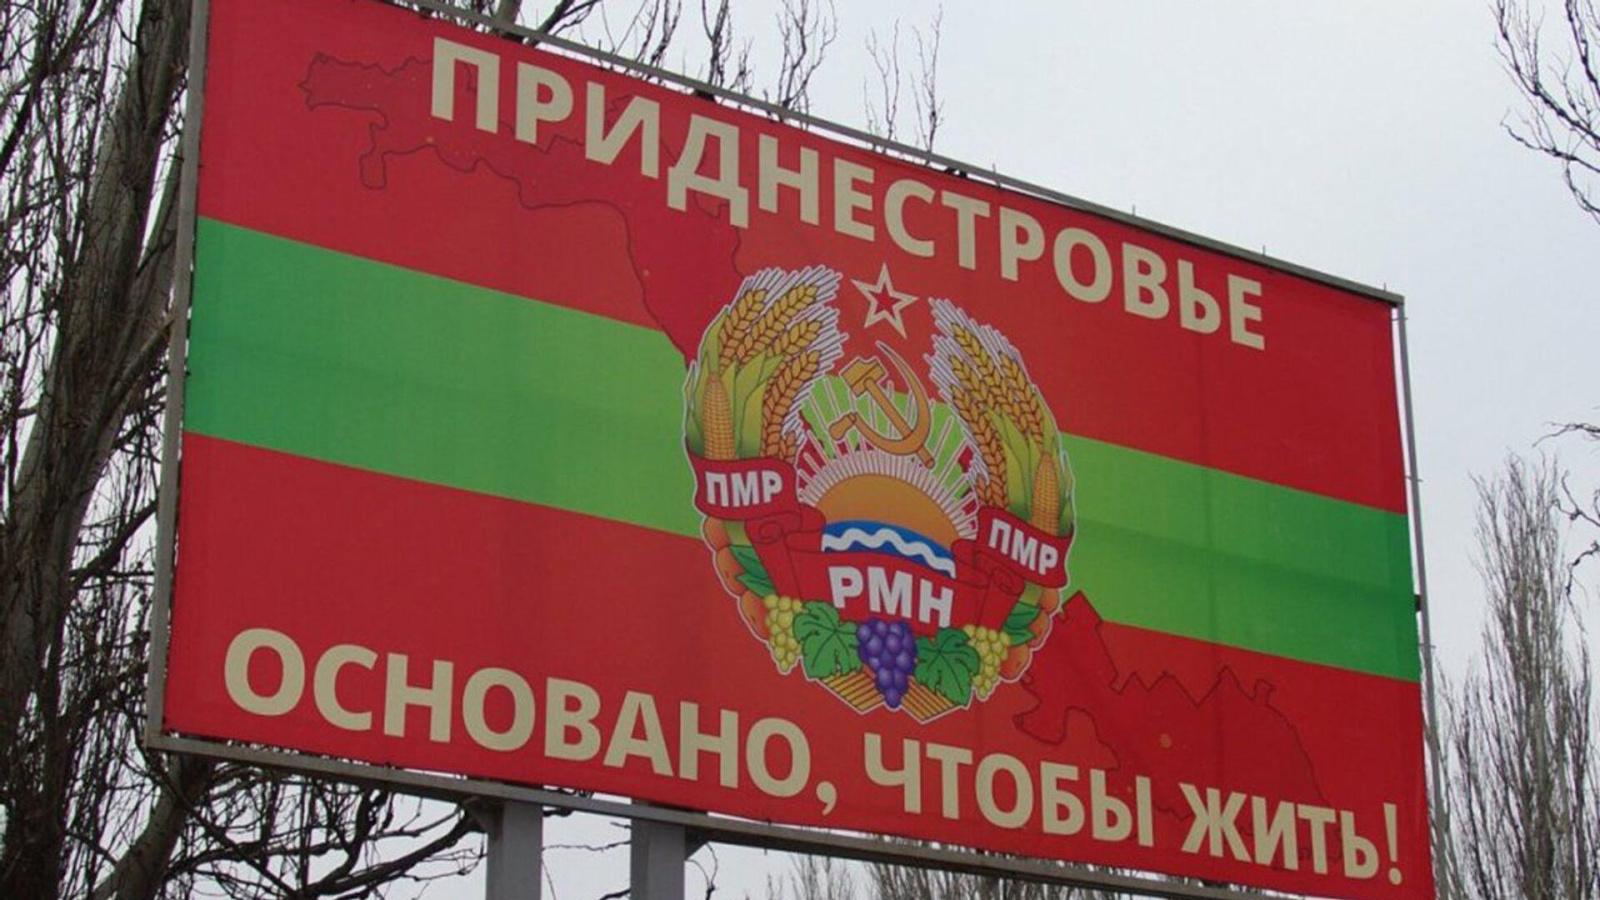   Власти Приднестровья оценили ситуацию на границах региона